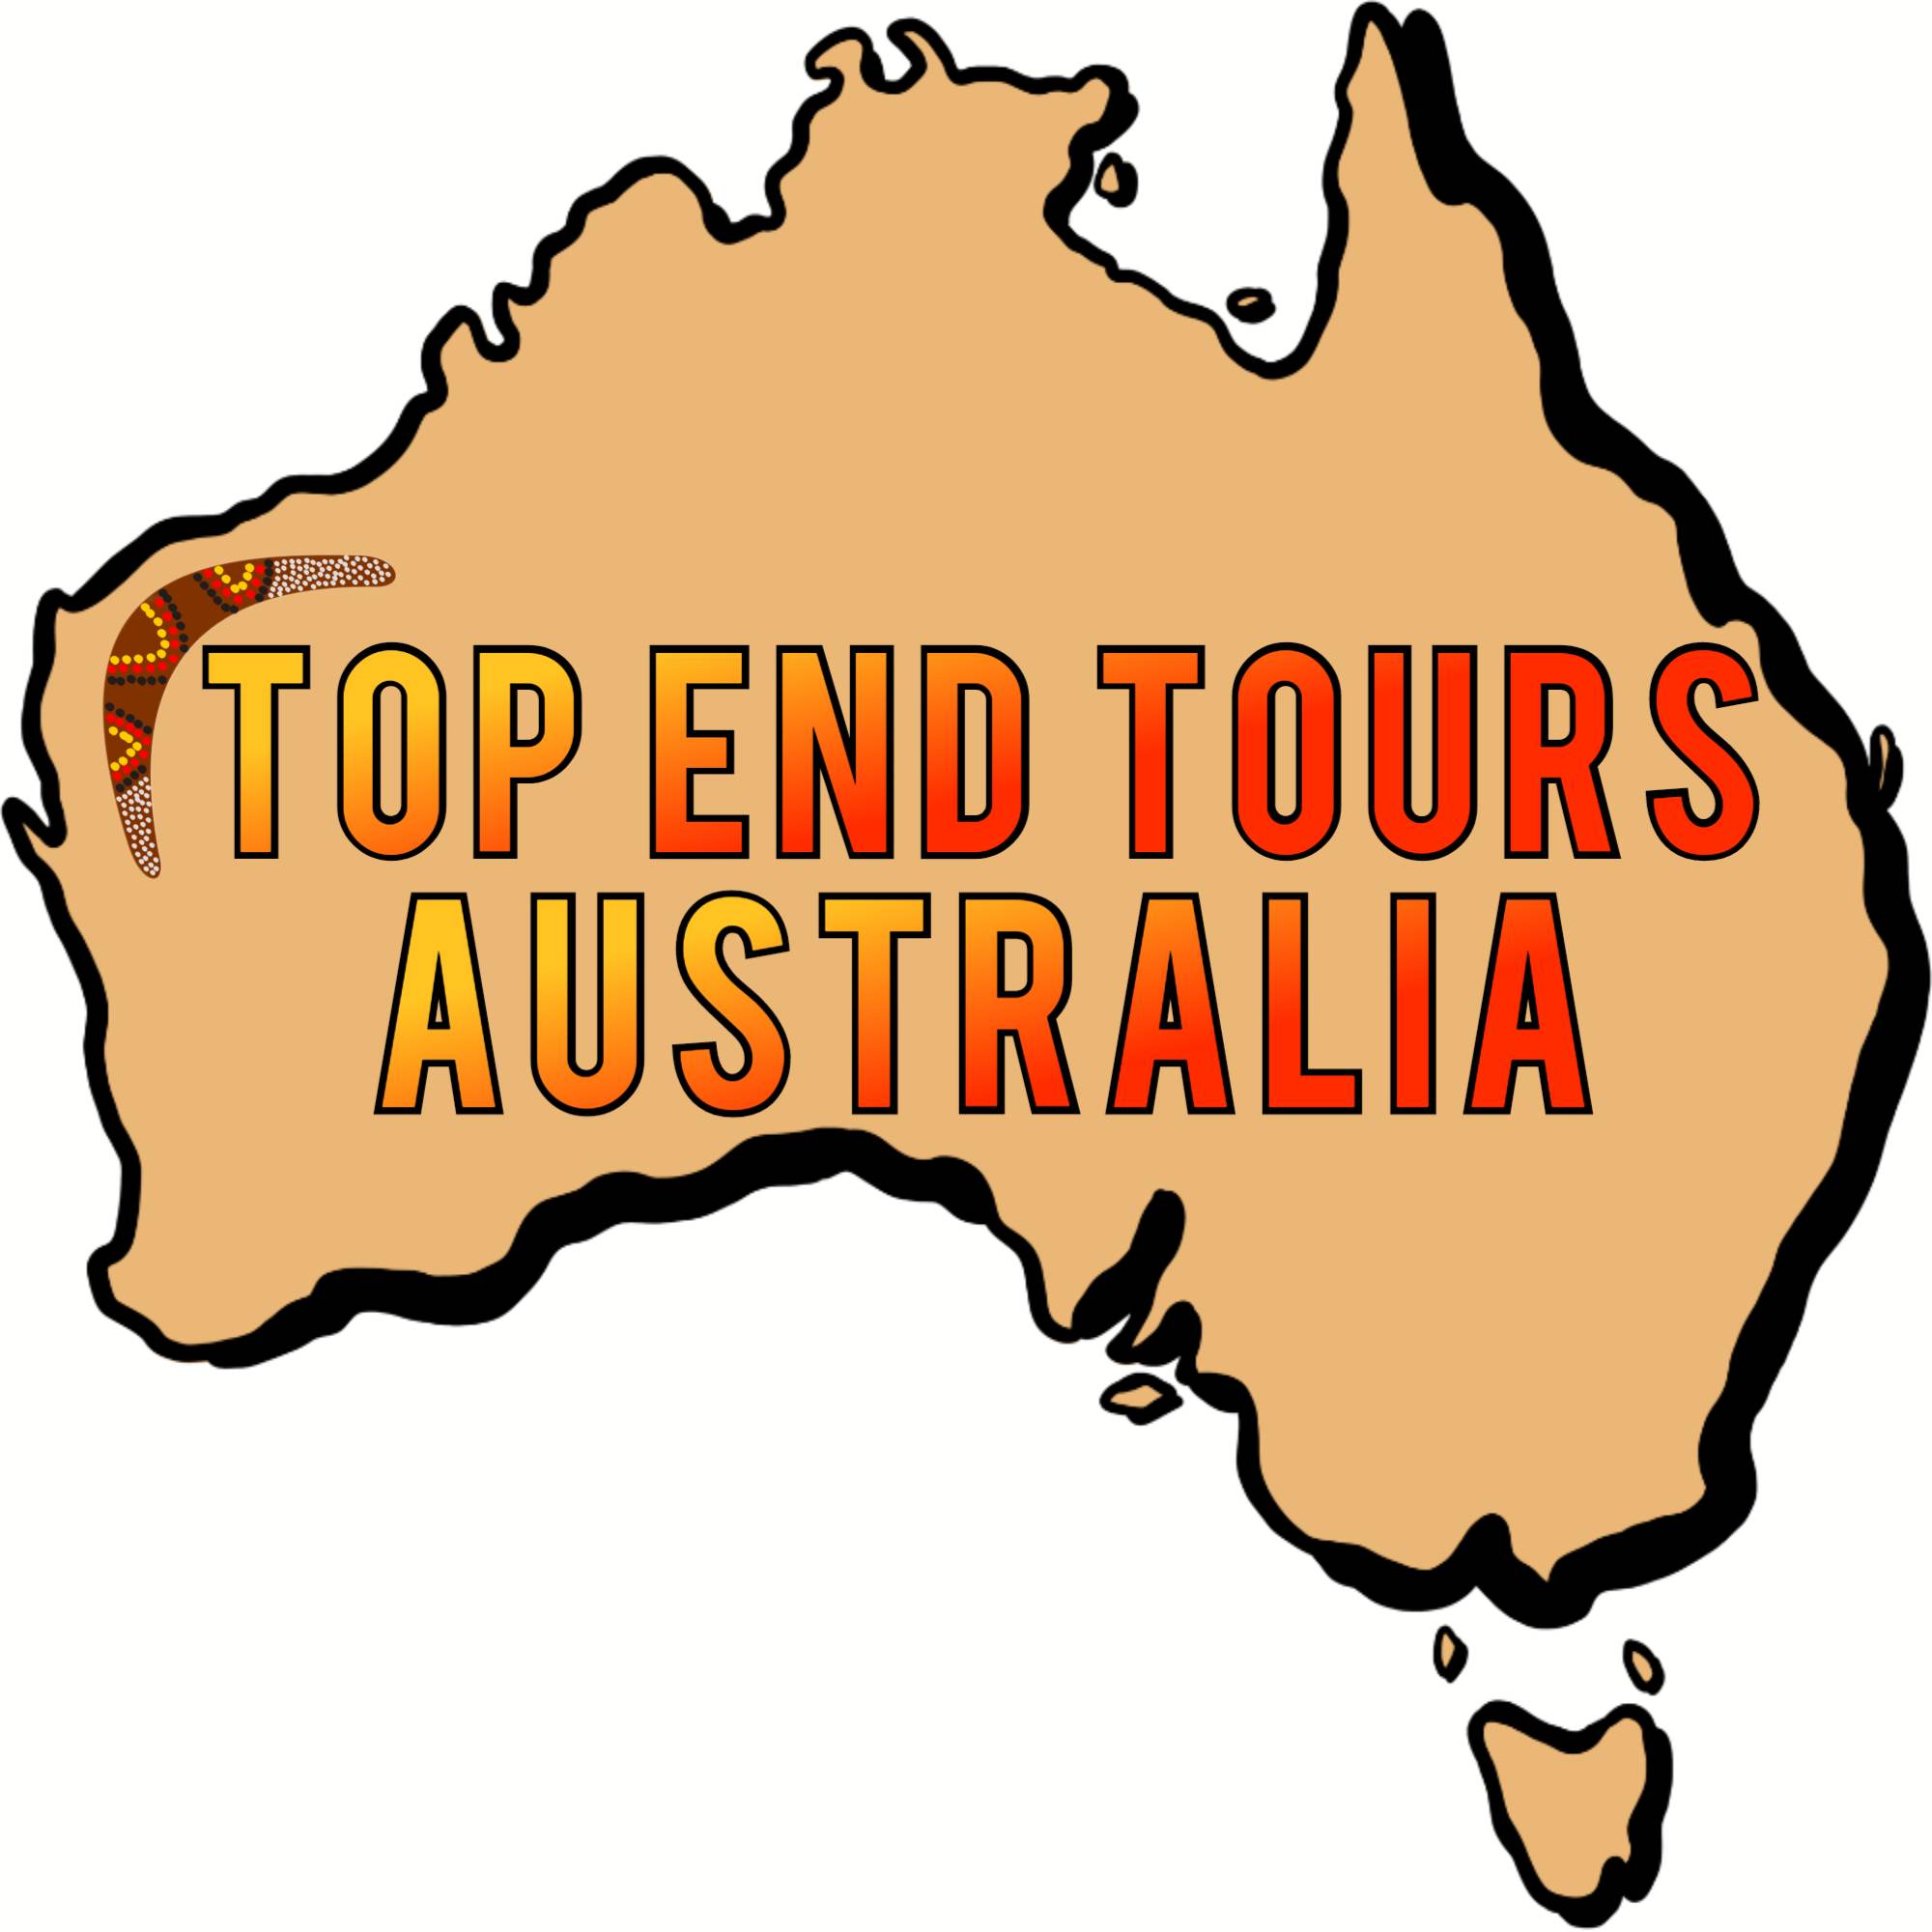 Top End Tours Australia